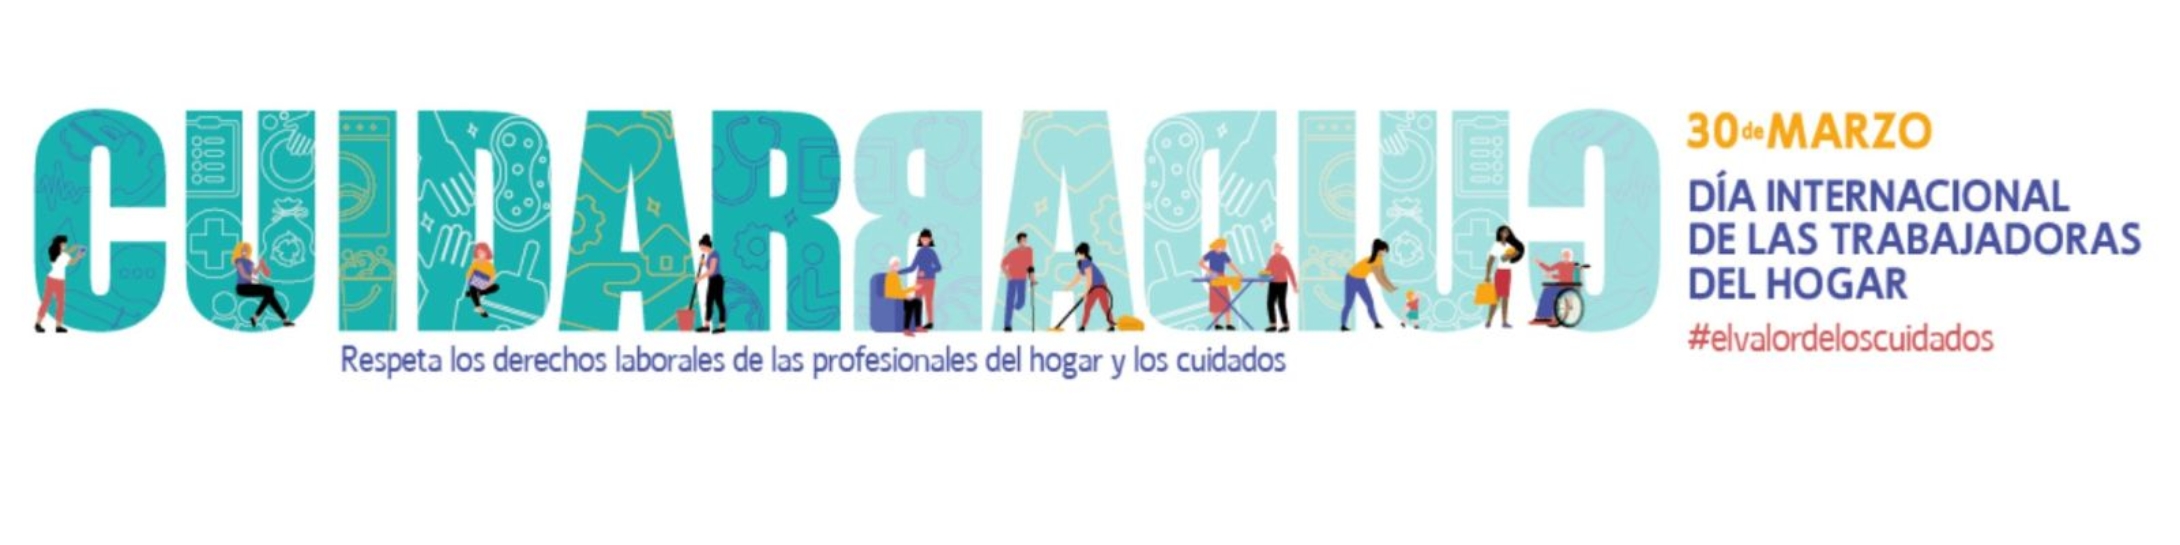 30 MARZO: Día Internacional de las Trabajadoras del Hogar